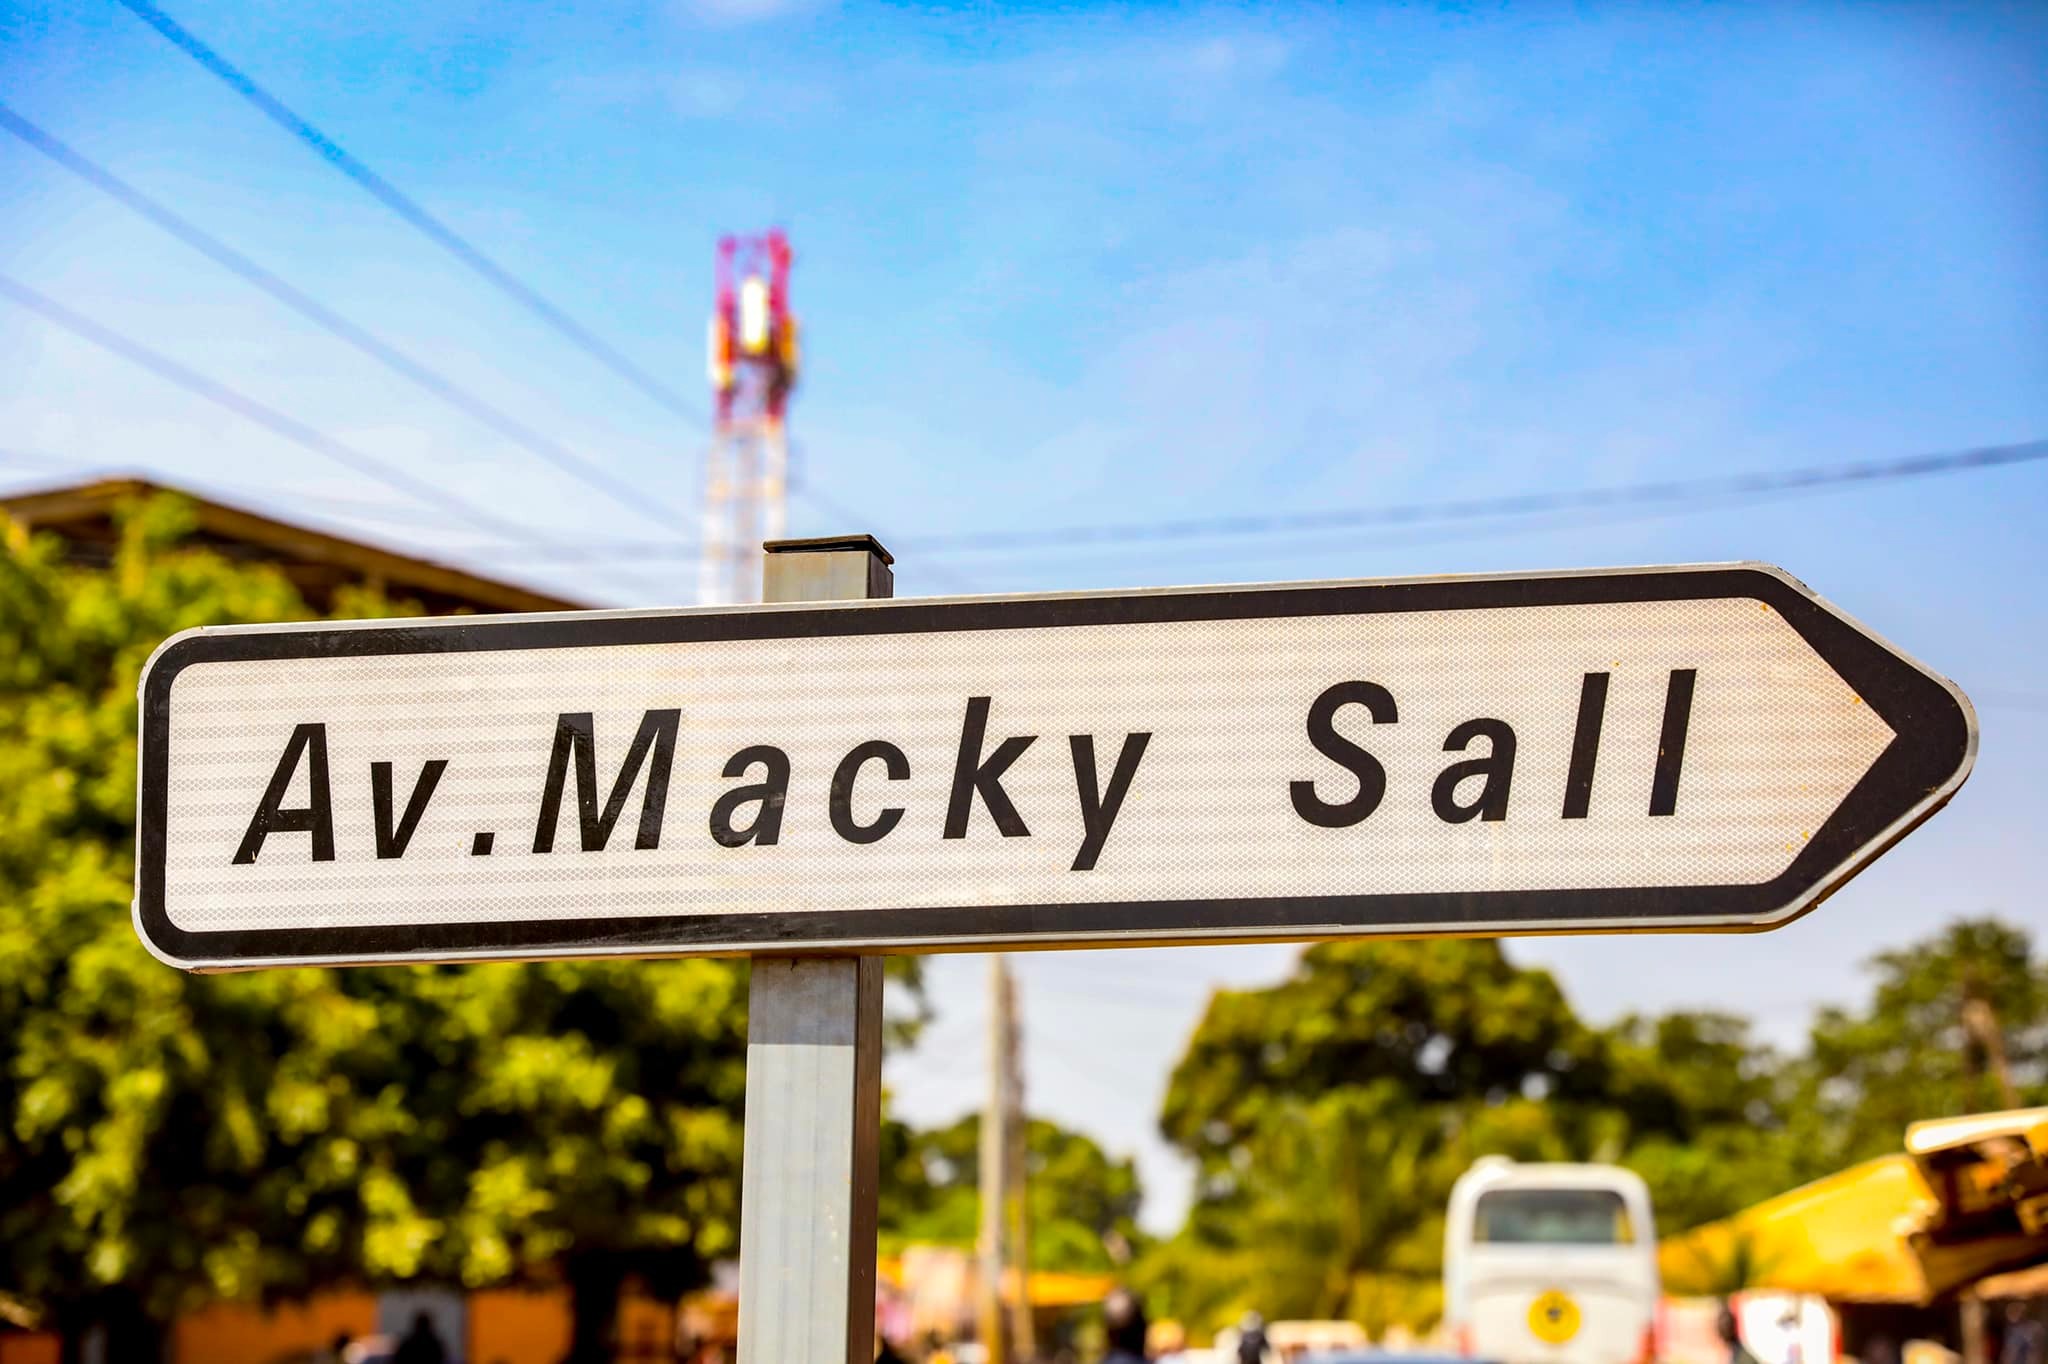 Une avenue qui porte le nom de Macky Sall inaugurée à Bissau